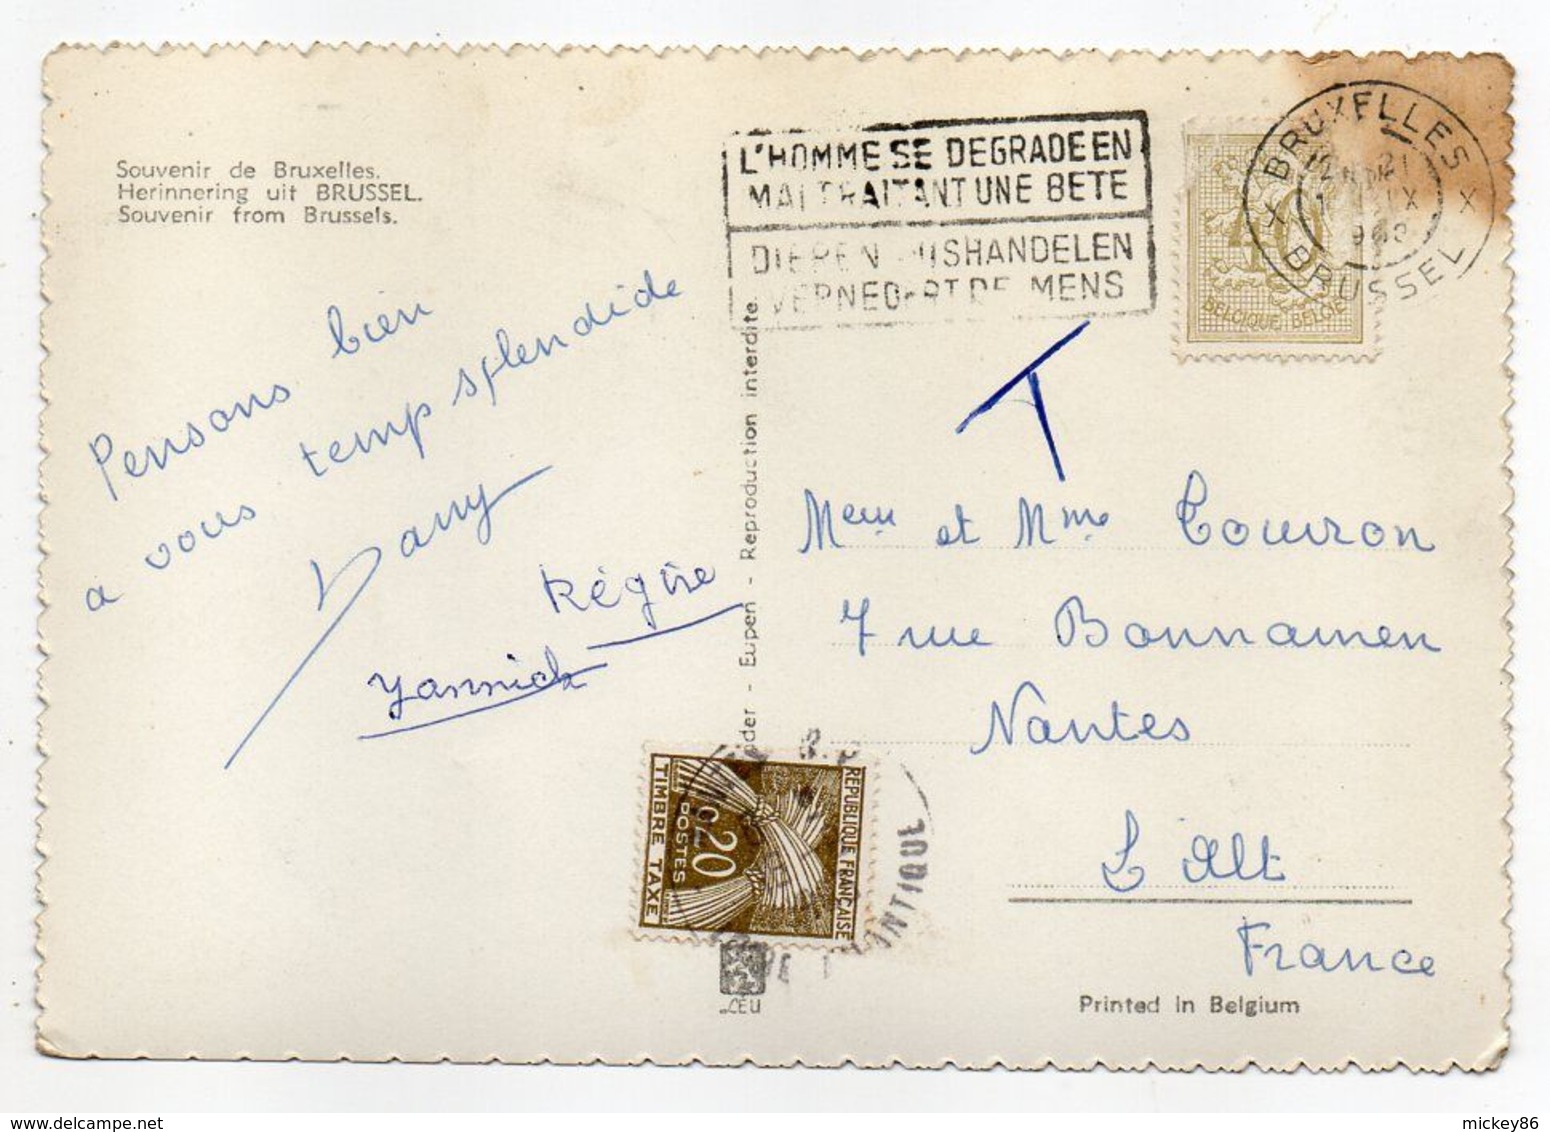 Belgique--carte Postale Taxée De Bruxelles Pour Nantes-44 (France)--Souvenir De Bruxelles La Nuit -Multivues - Briefe U. Dokumente